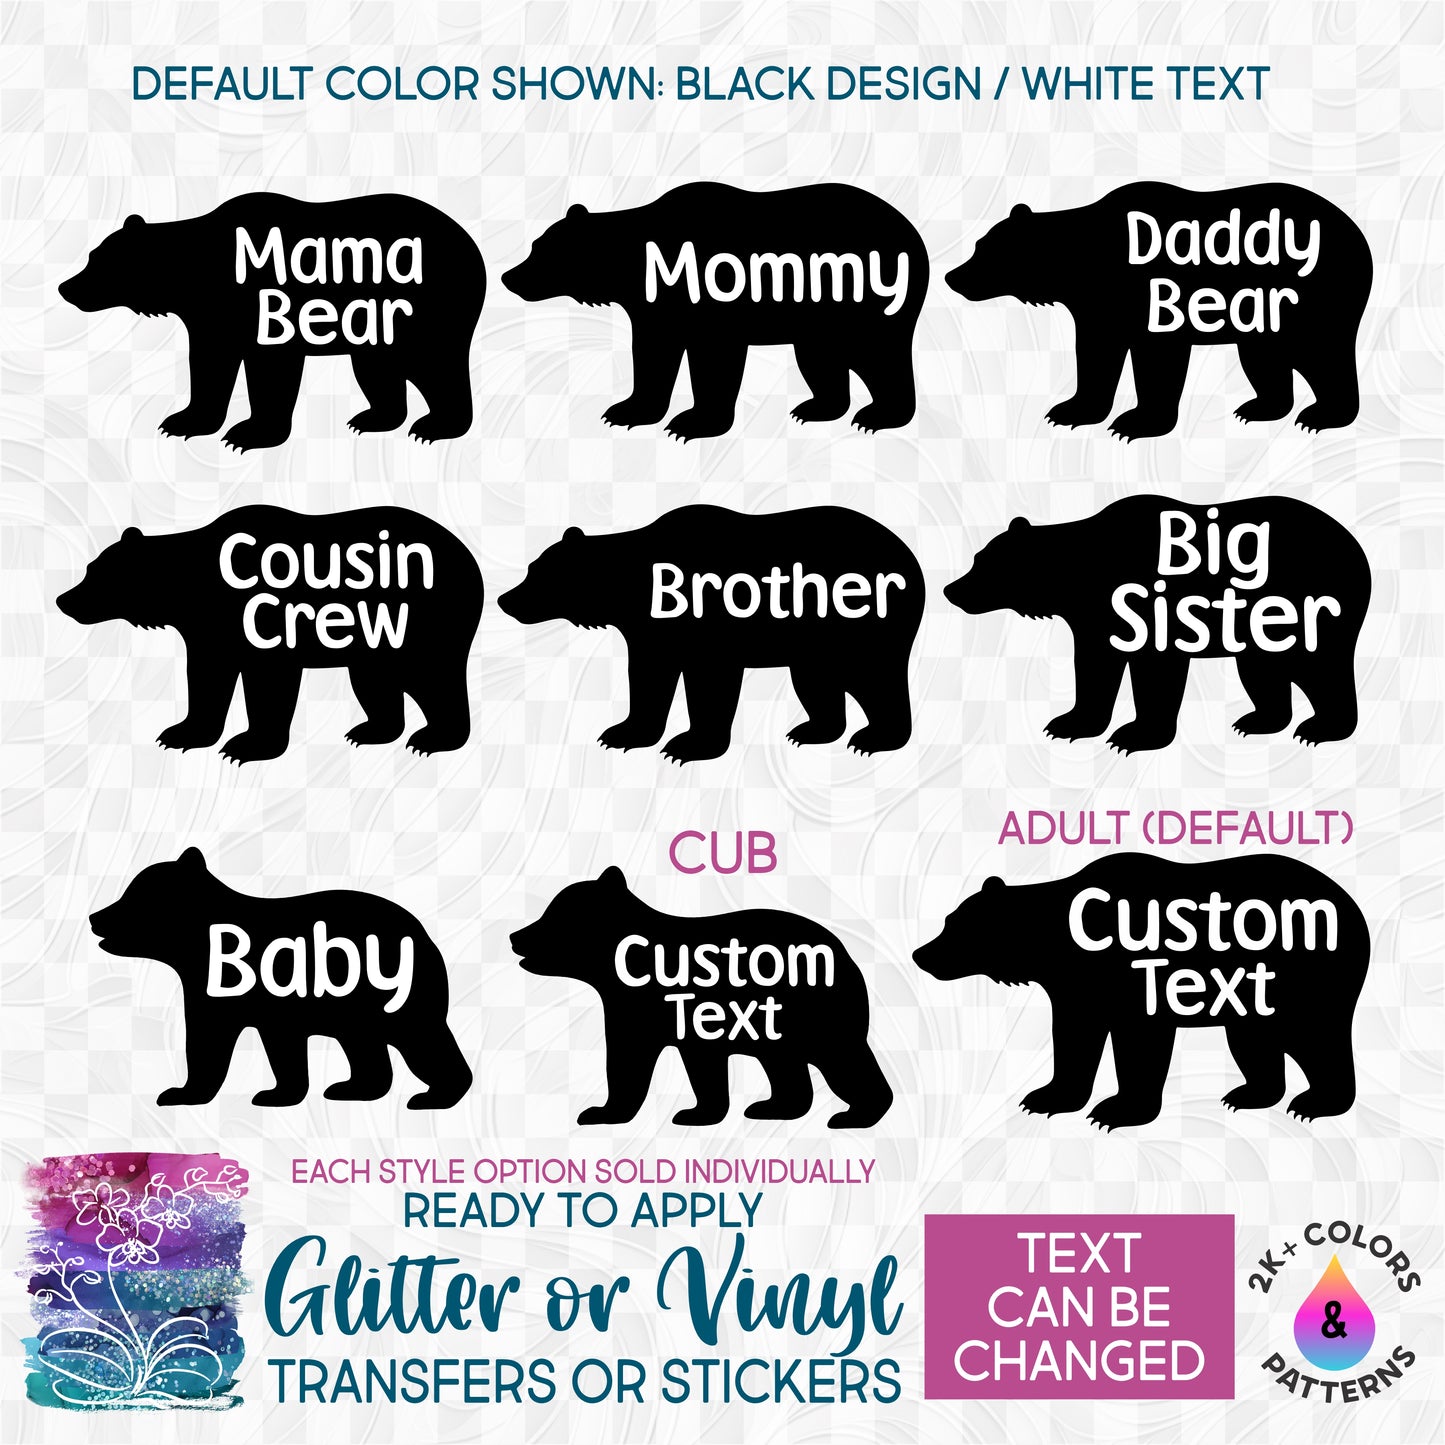 (s232-I2) Bear Family Custom Text Glitter or Vinyl Iron-On Transfer or Sticker